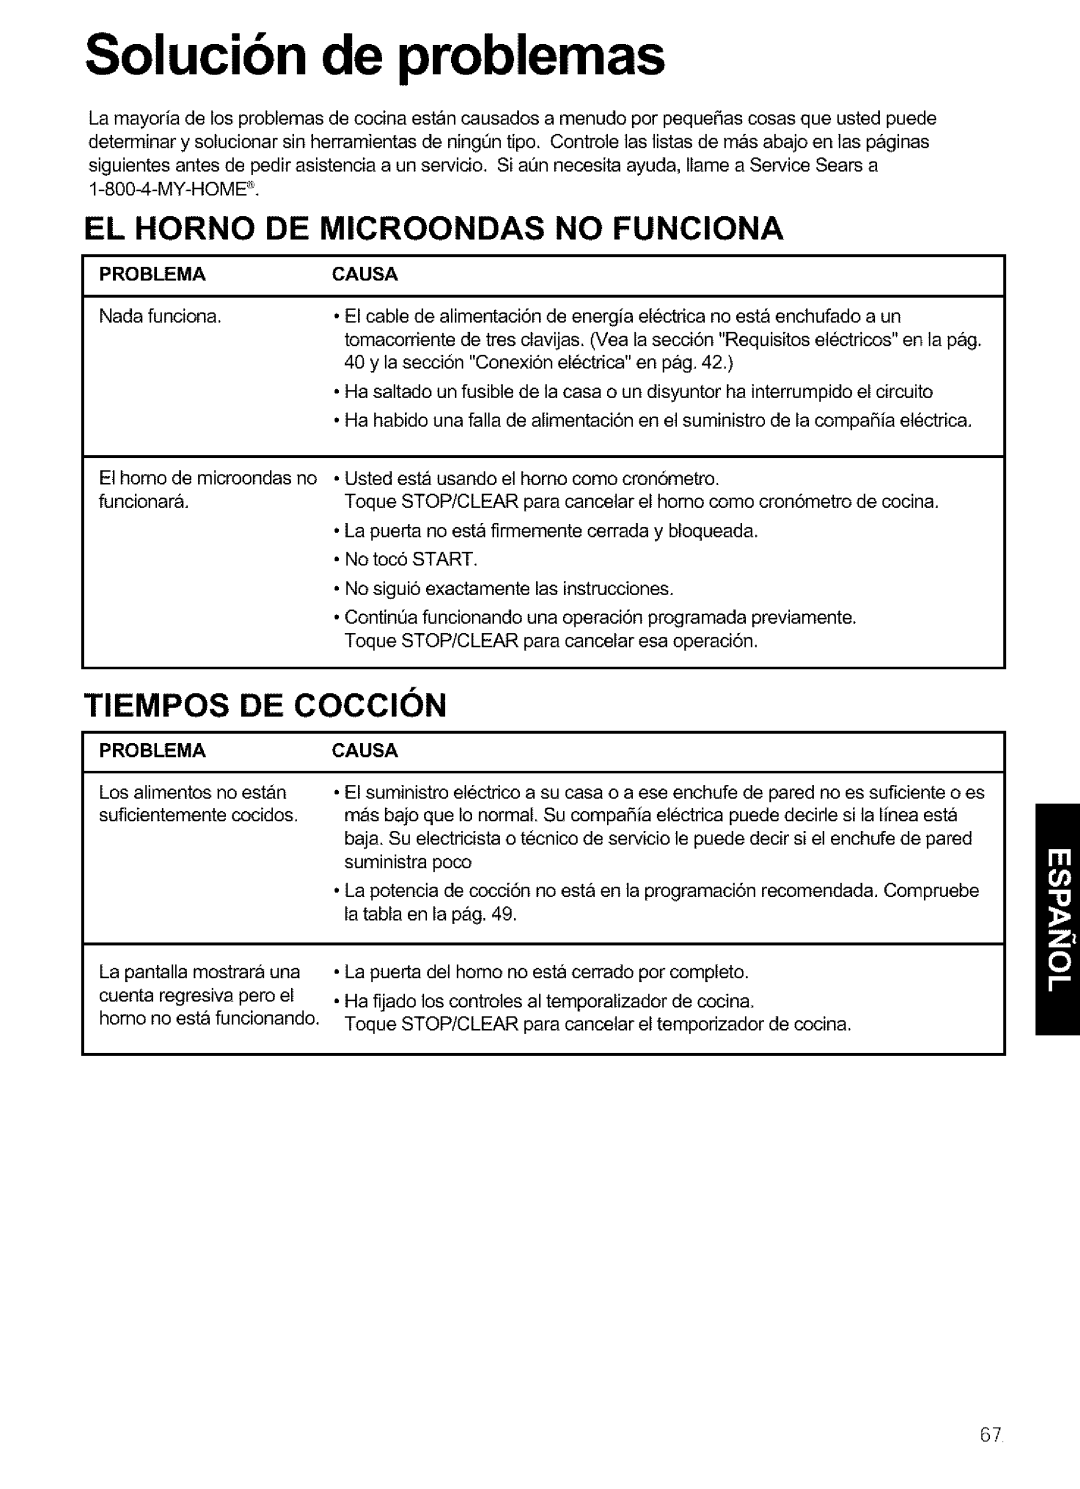 Kenmore 721.64683 manual Solucibn de problemas, El Horno De Microondas No Funciona, TIEMPOS DE COCClON, Problema, Causa 